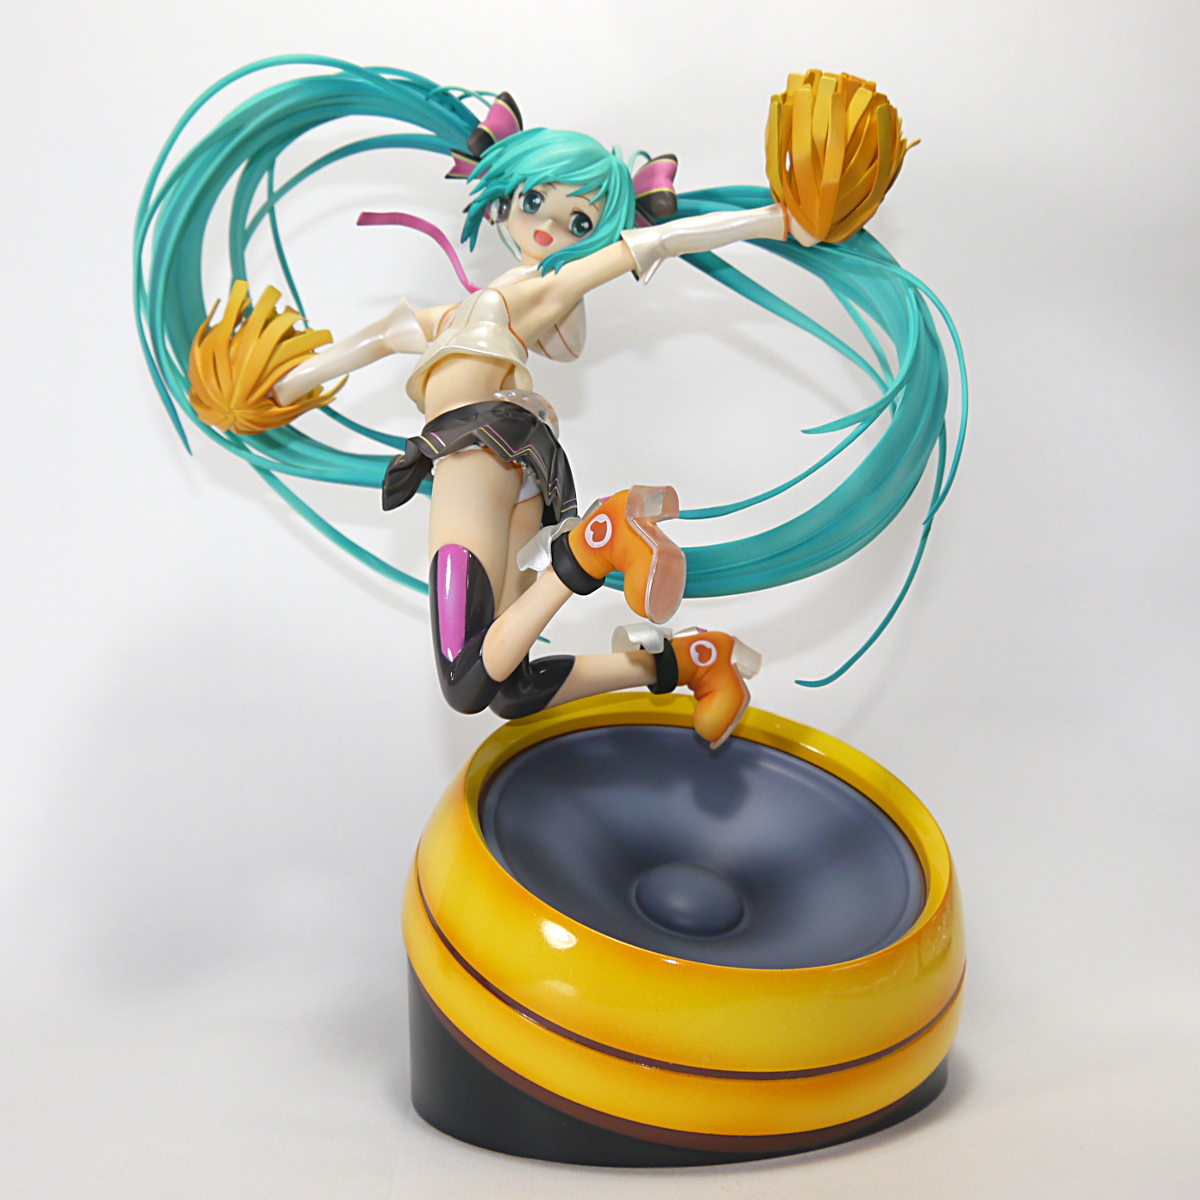 Hatsune-Figurine d'action manga en PVC figurine d'anime belle statue de  fille sirène jouets modèles à collectionner beurre cadeau nouveau